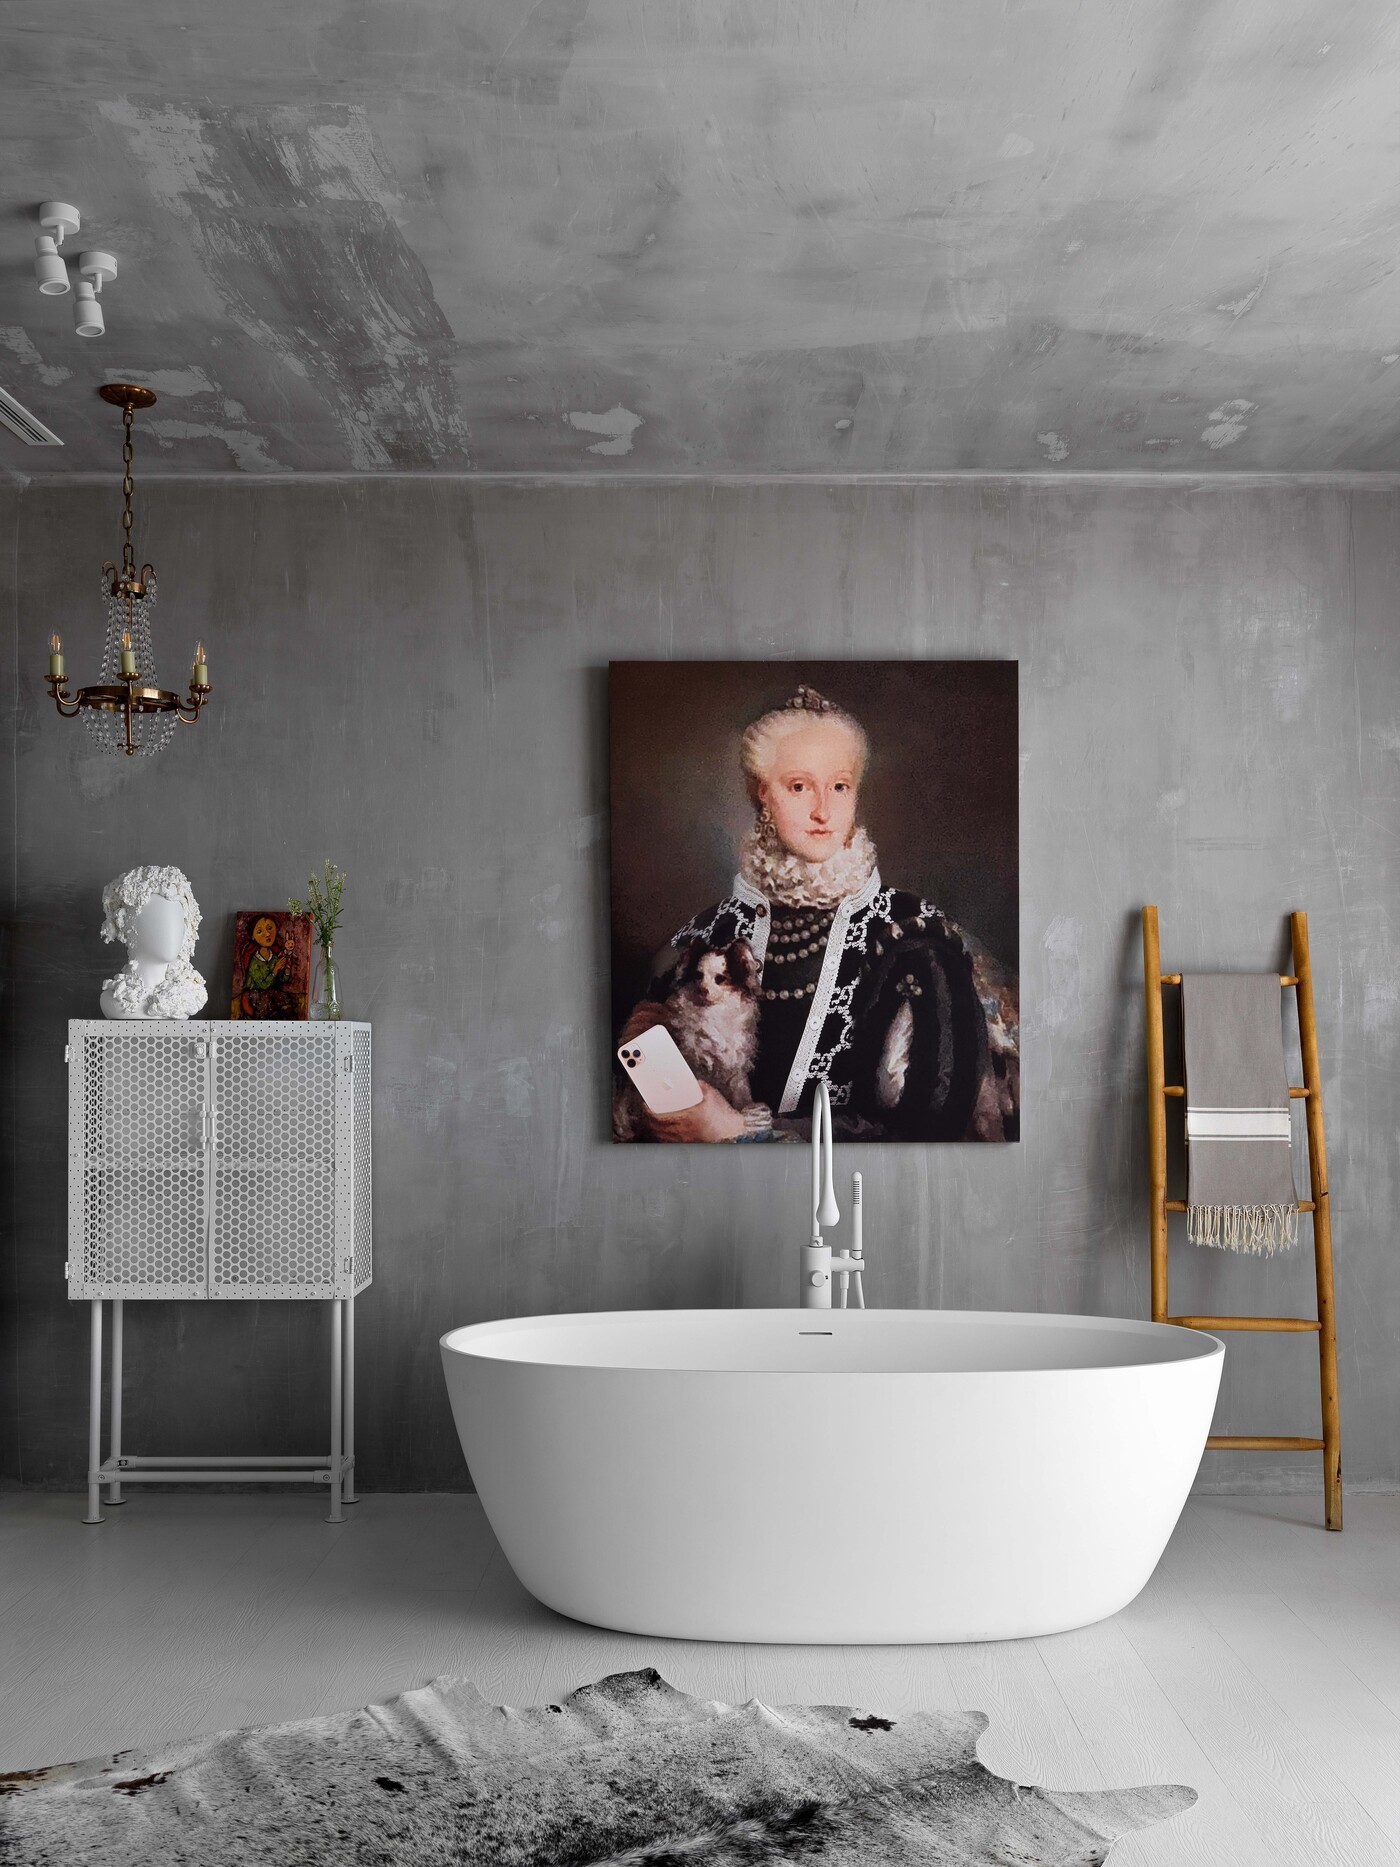 Décor do dia: banheiro com banheira tem paredes rústicas e base neutra (Foto: Sergey Krasyuk)